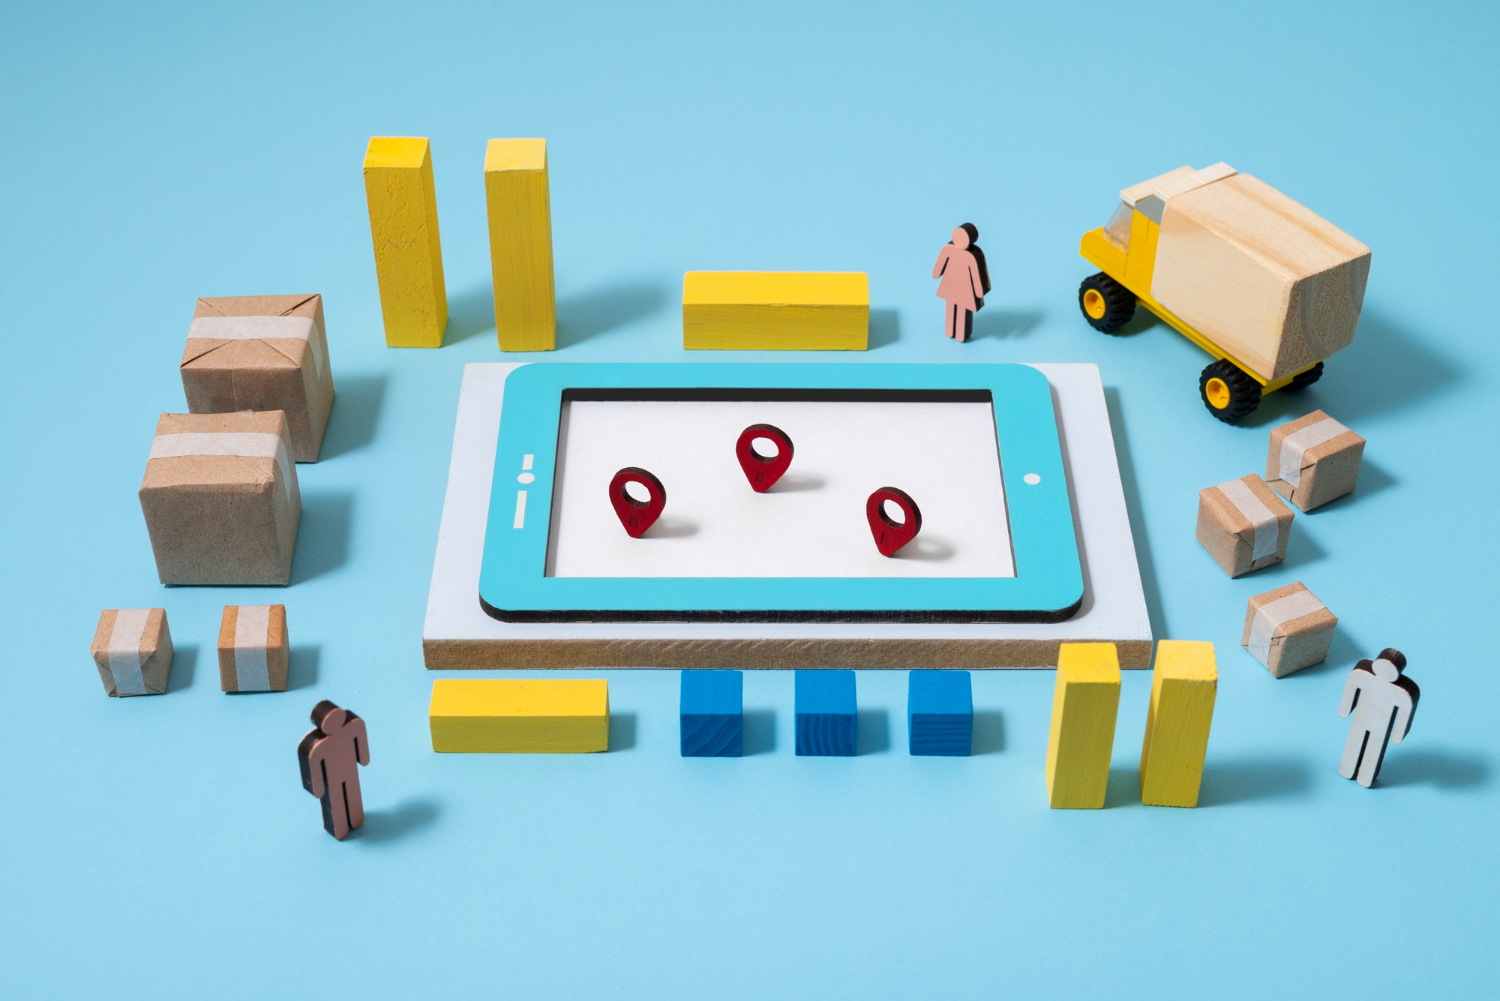 Ilustração que reúne um tablet, algumas caixas e pins de localização, além de um caminhão e algumas pessoas.